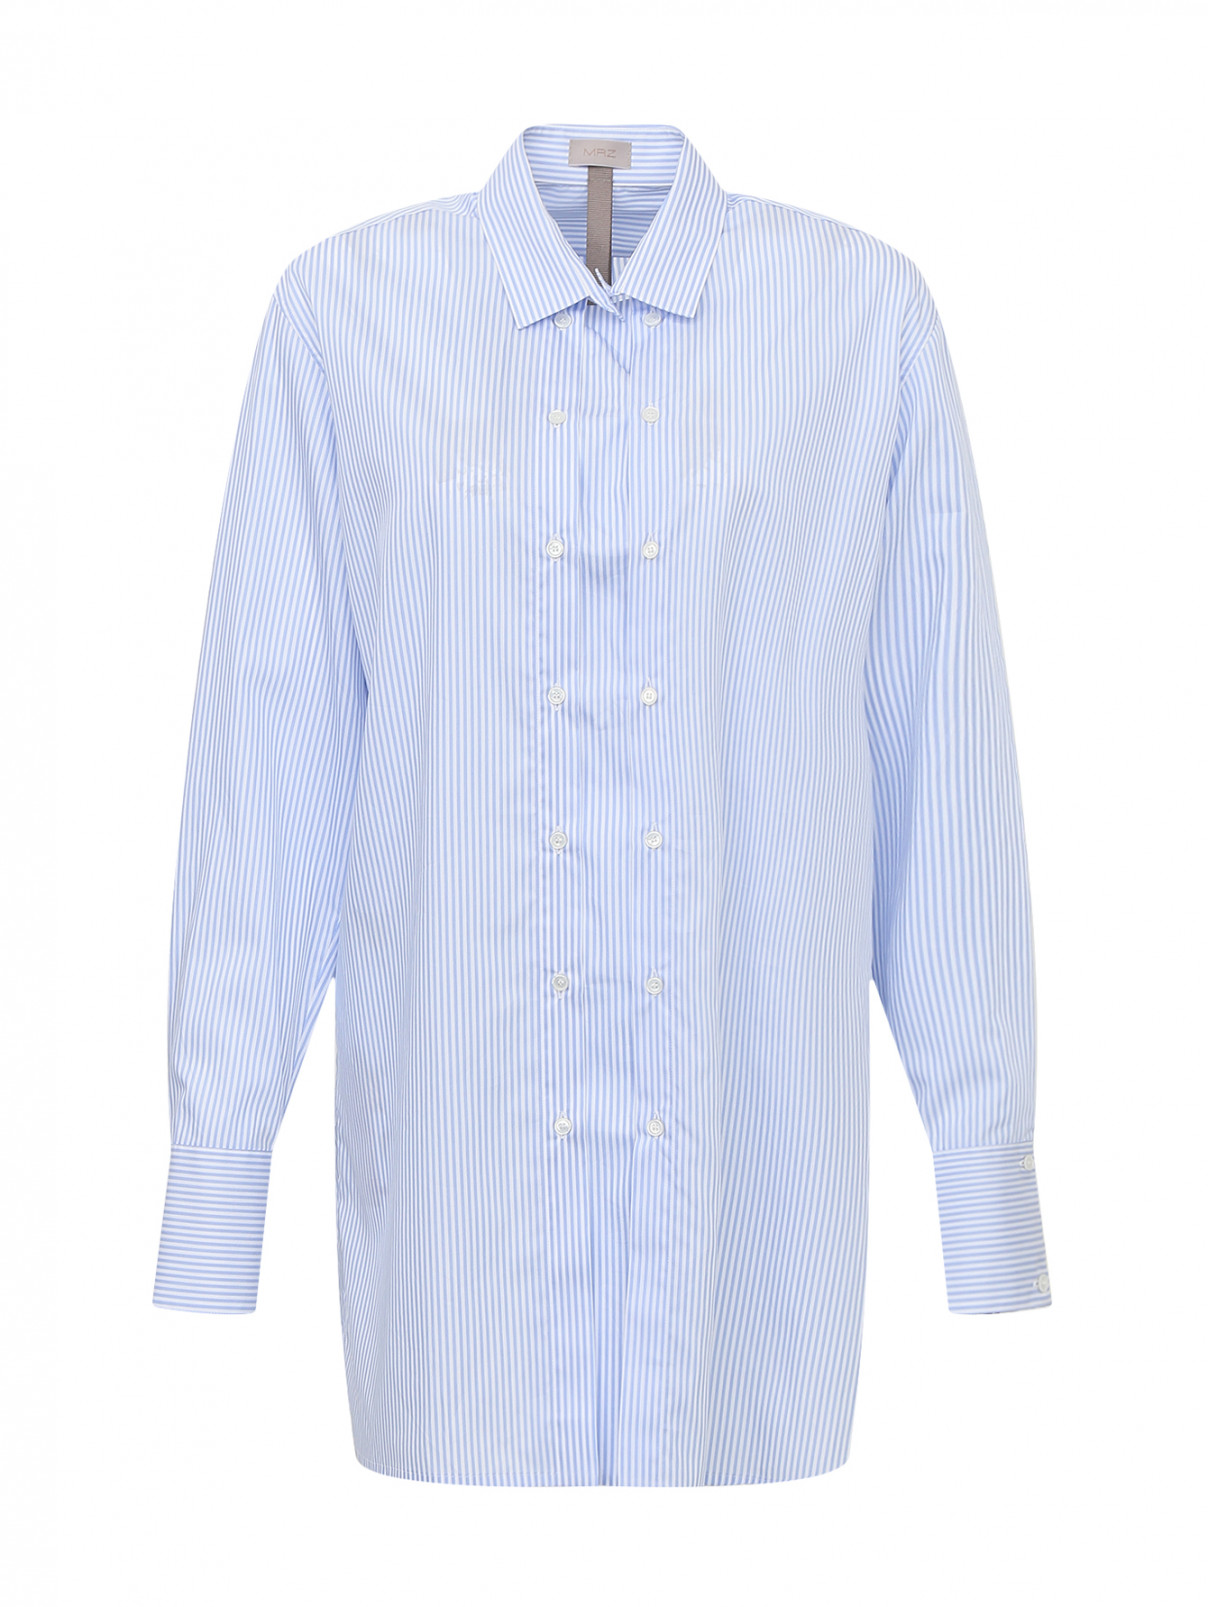 Рубашка из хлопка в полоску MRZ  –  Общий вид  – Цвет:  Синий